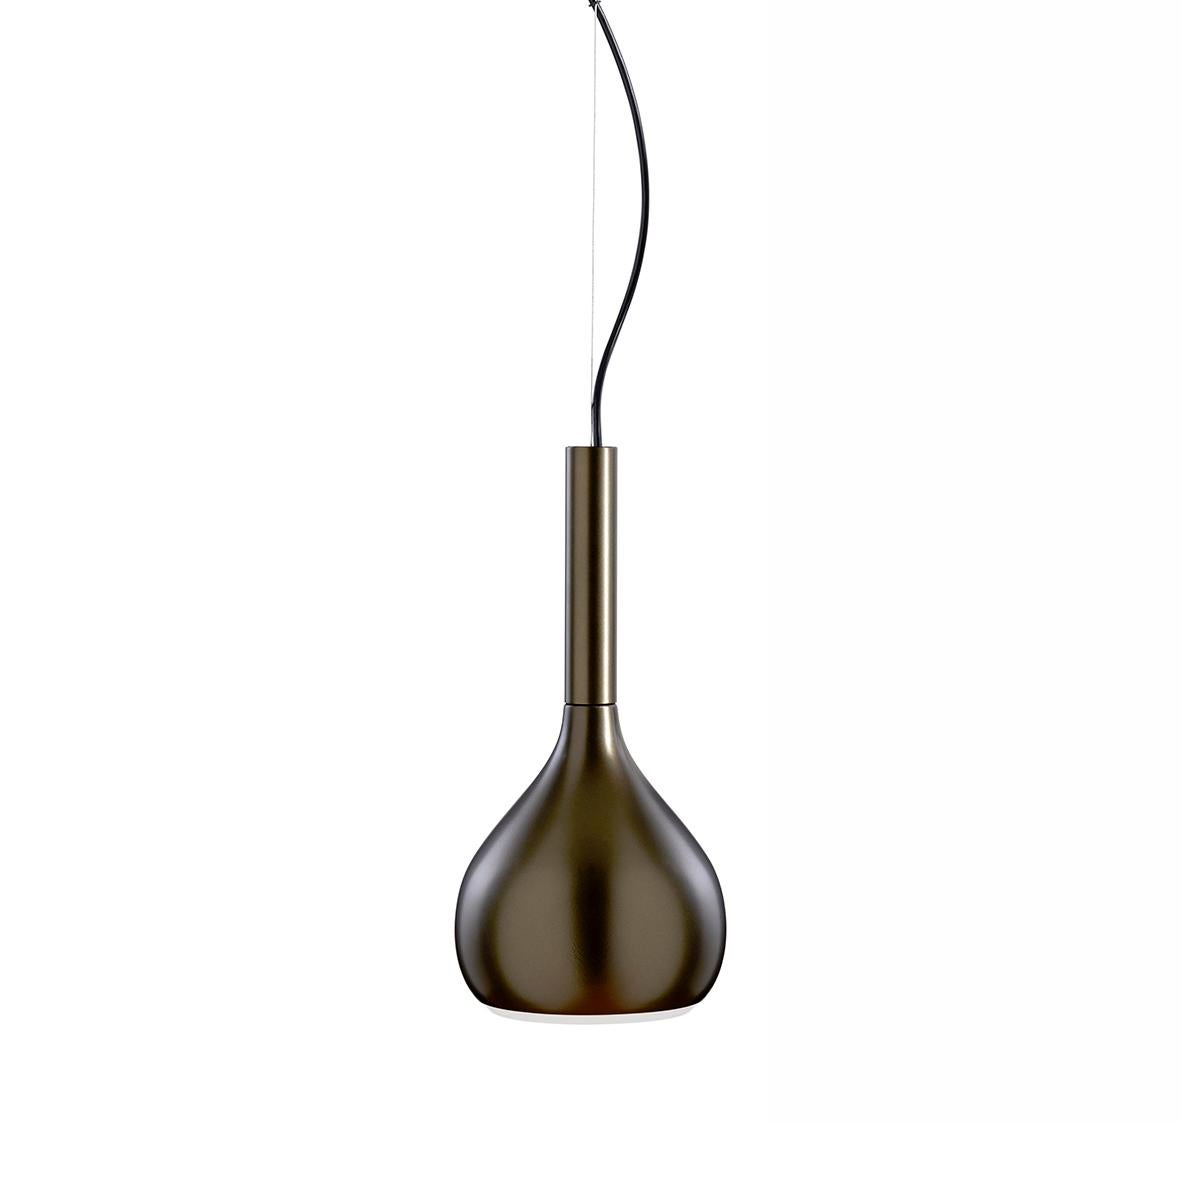 Italian Angeletti e Ruzza Suspension Lamp 'Lys' Anodic Bronze by Oluce